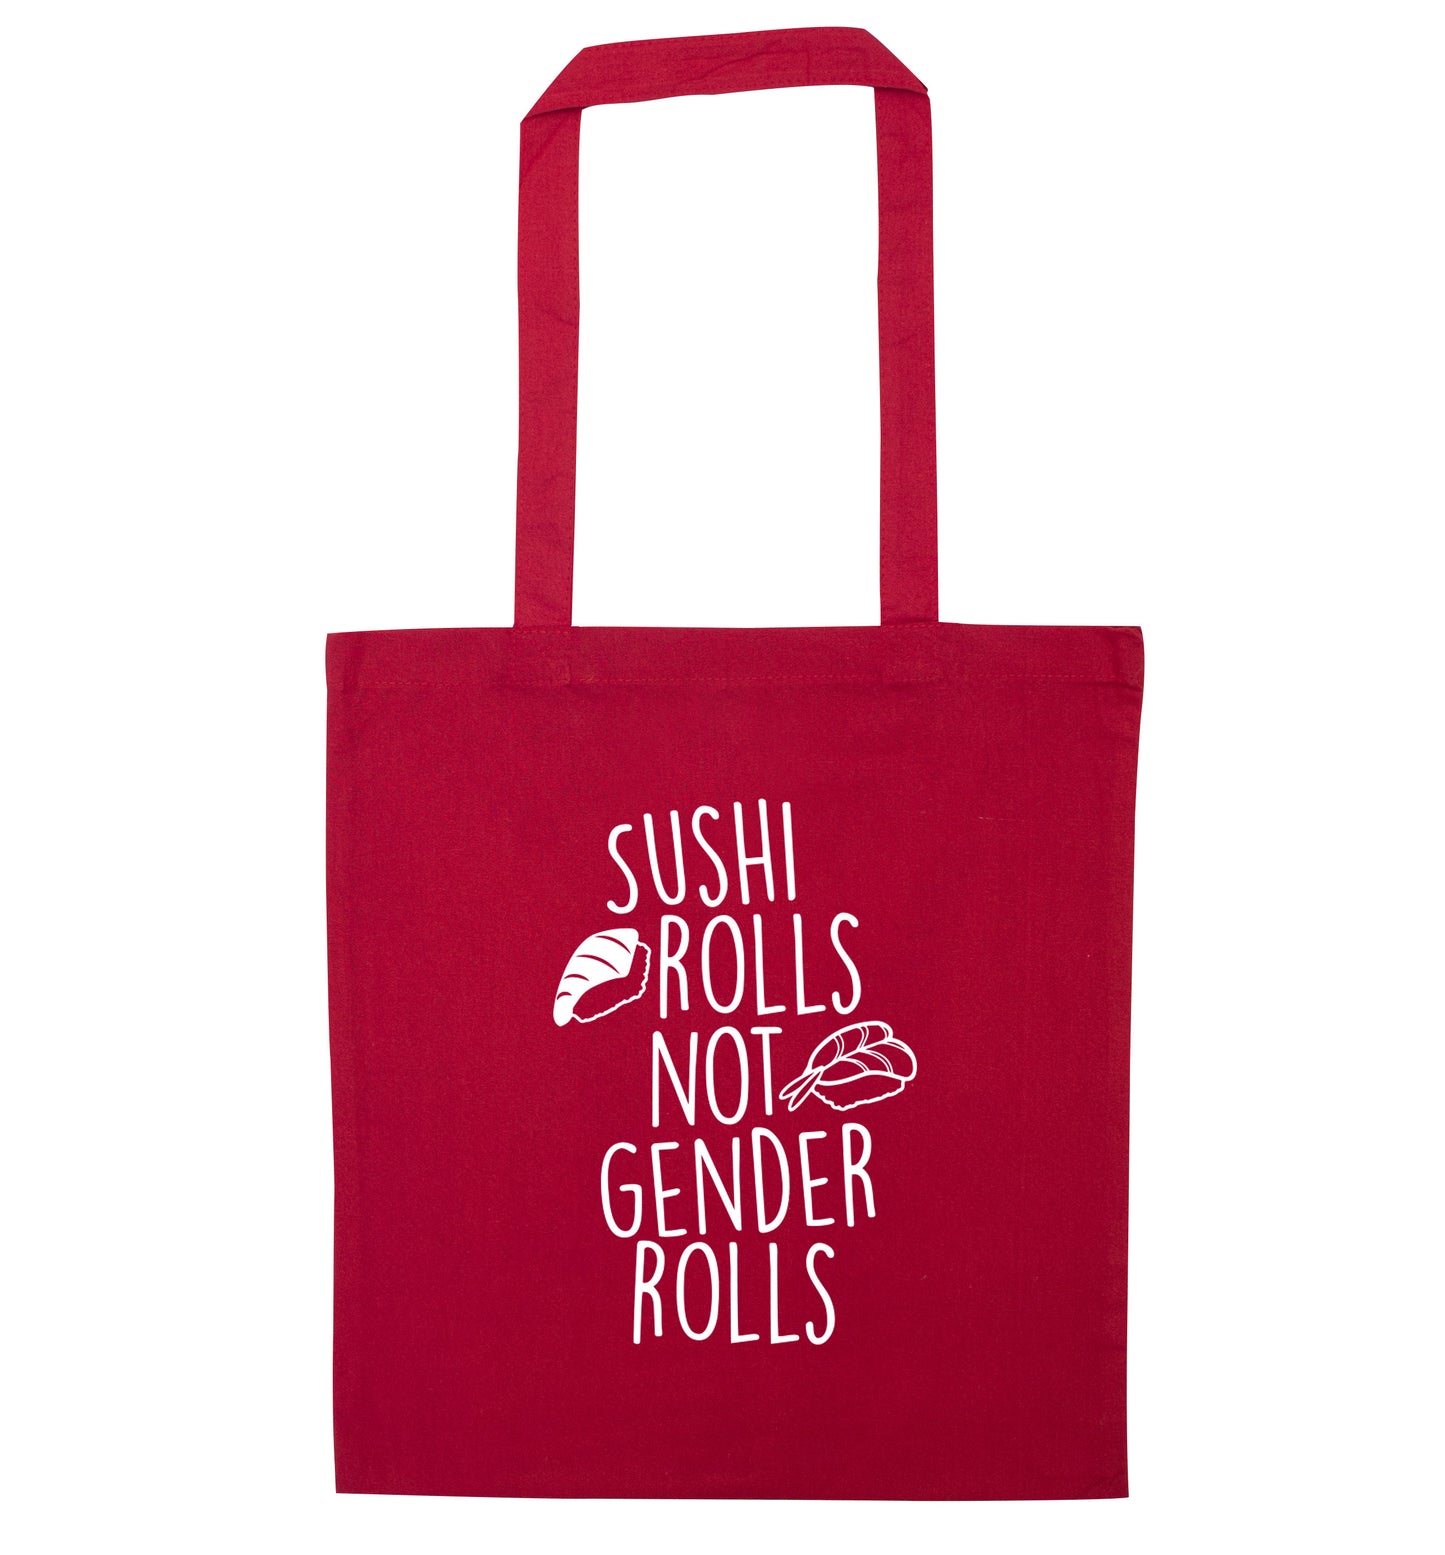 Sushi rolls not gender rolls red tote bag